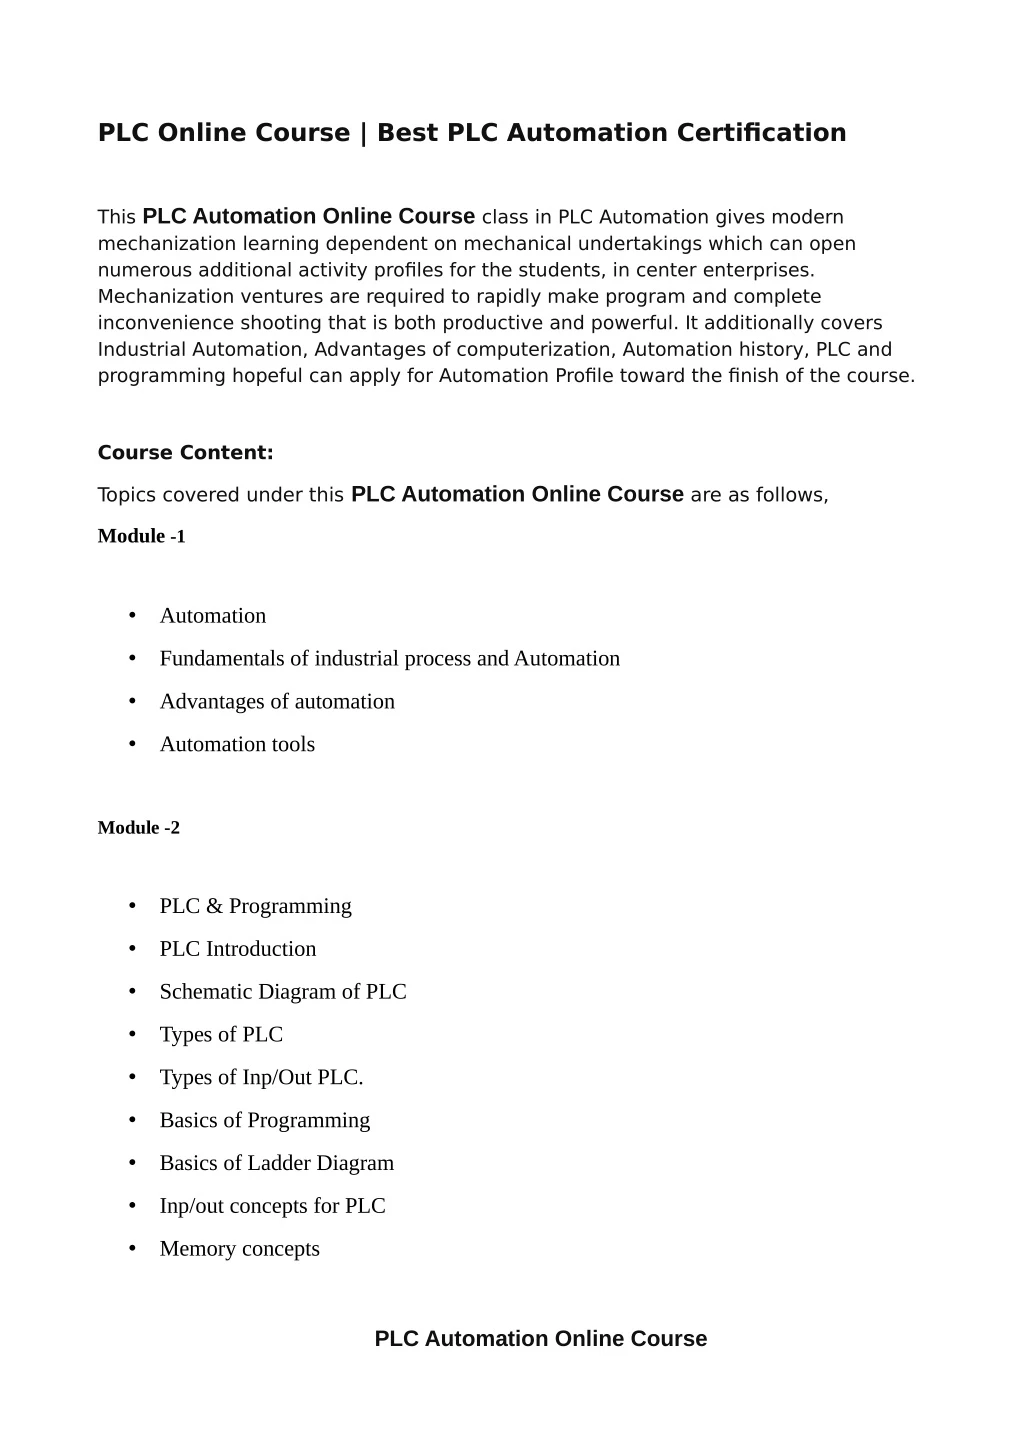 PPT PLC Online Course Best PLC Automation Certification PowerPoint